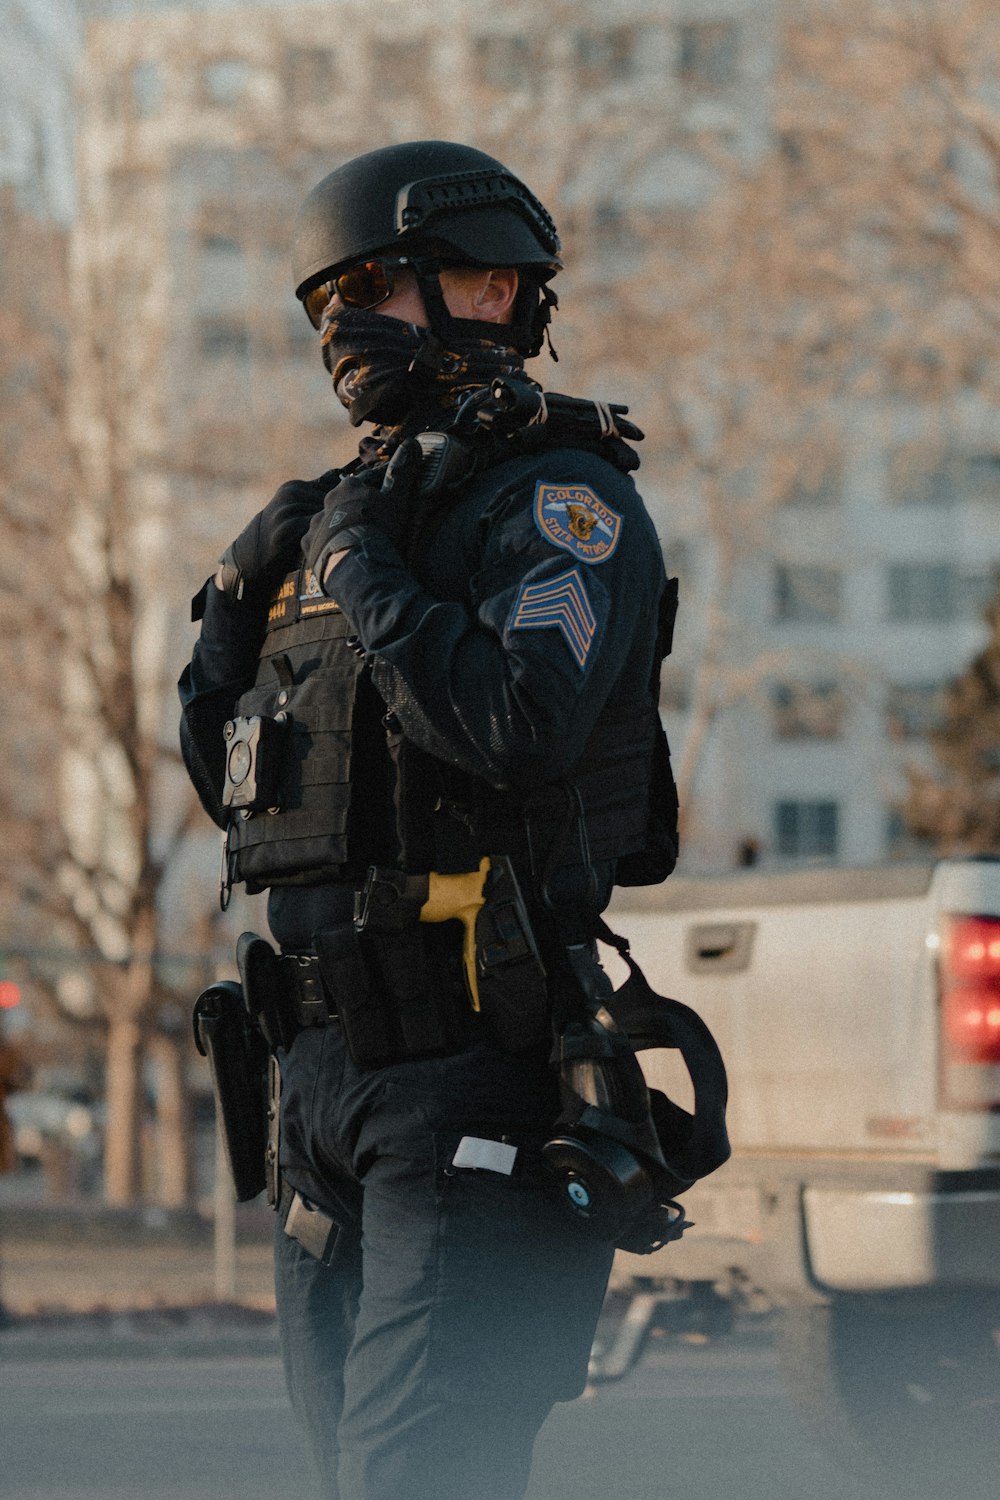 黒と白の警察の制服を着た男の写真 – Unsplashの無料黒写真